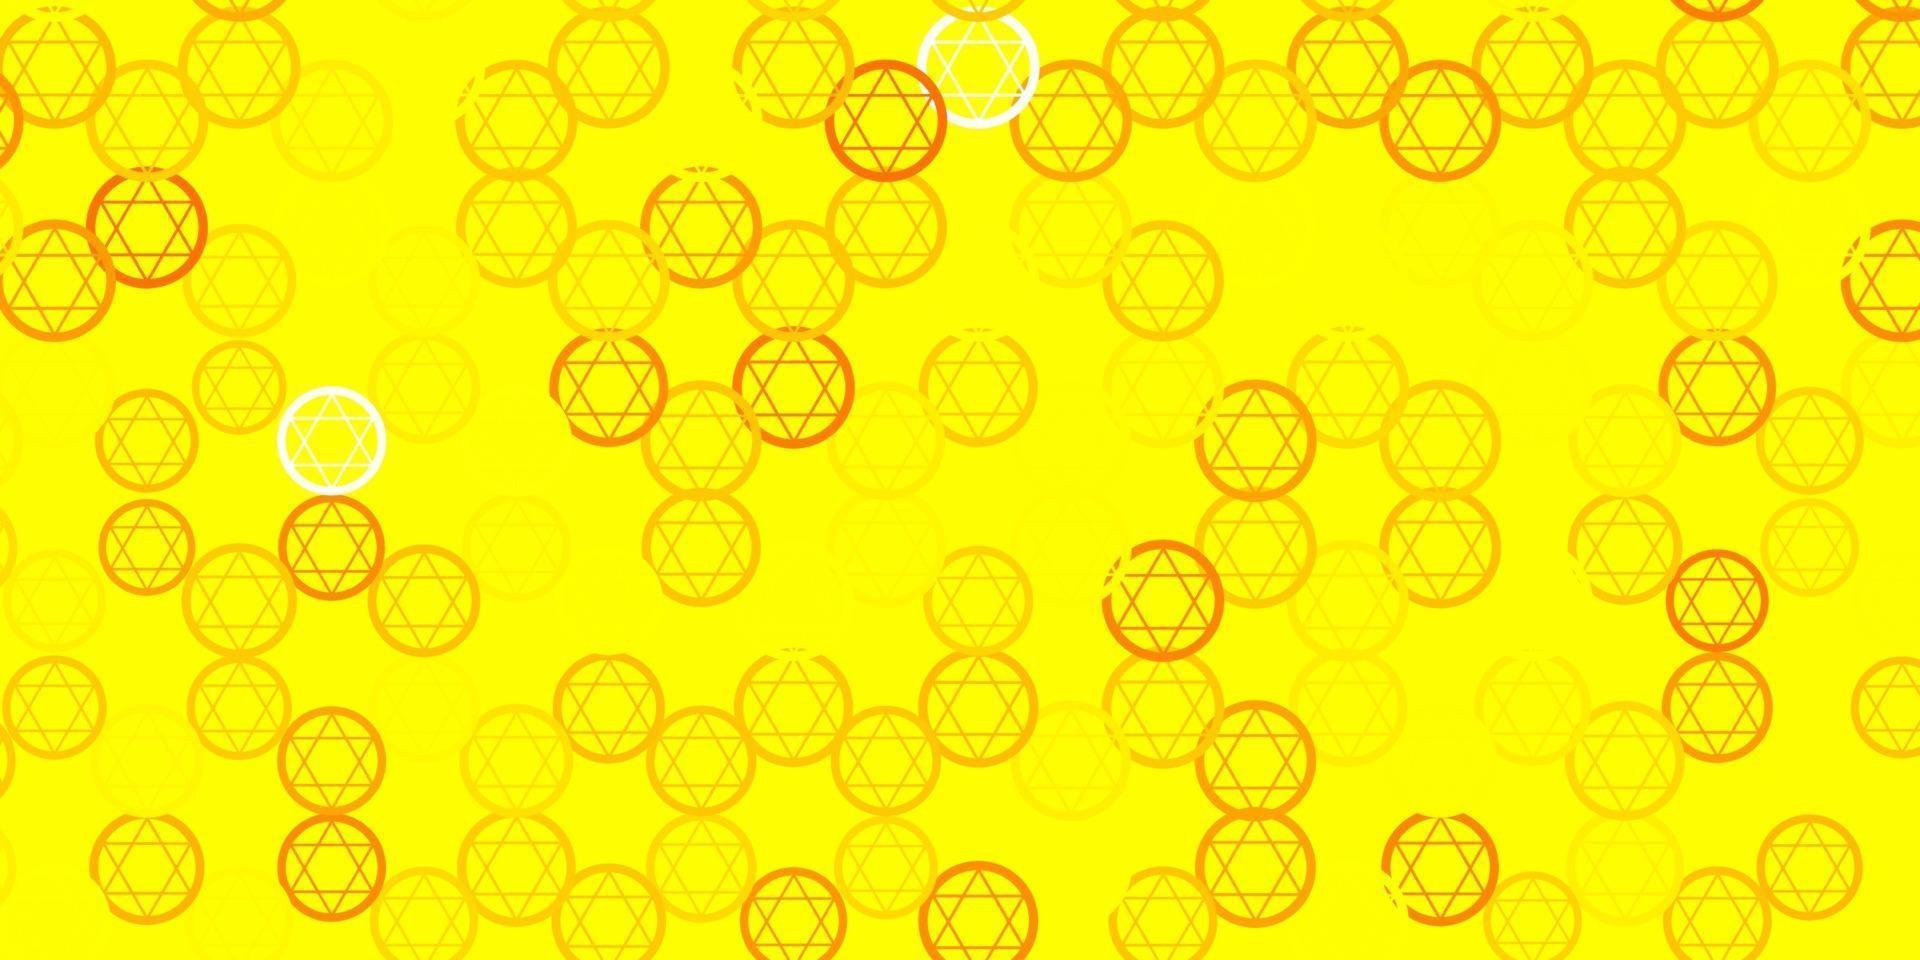 sfondo vettoriale giallo chiaro con simboli occulti.